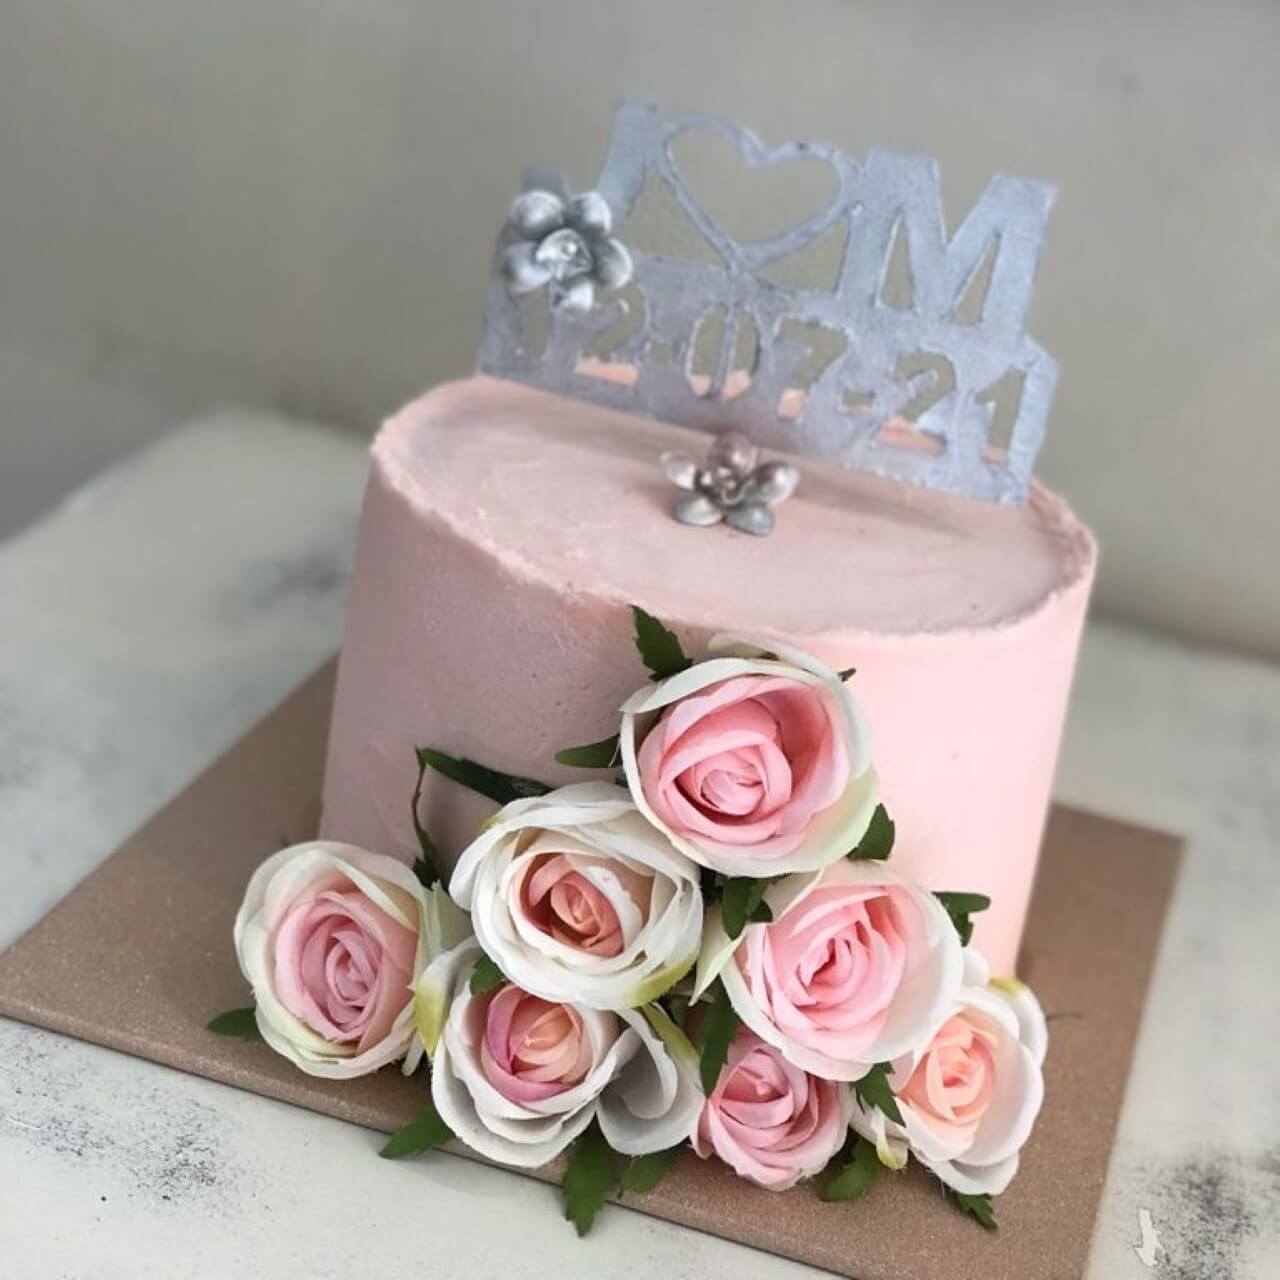 Catálogo de tartas: foto de un pastel con rosas de adorno